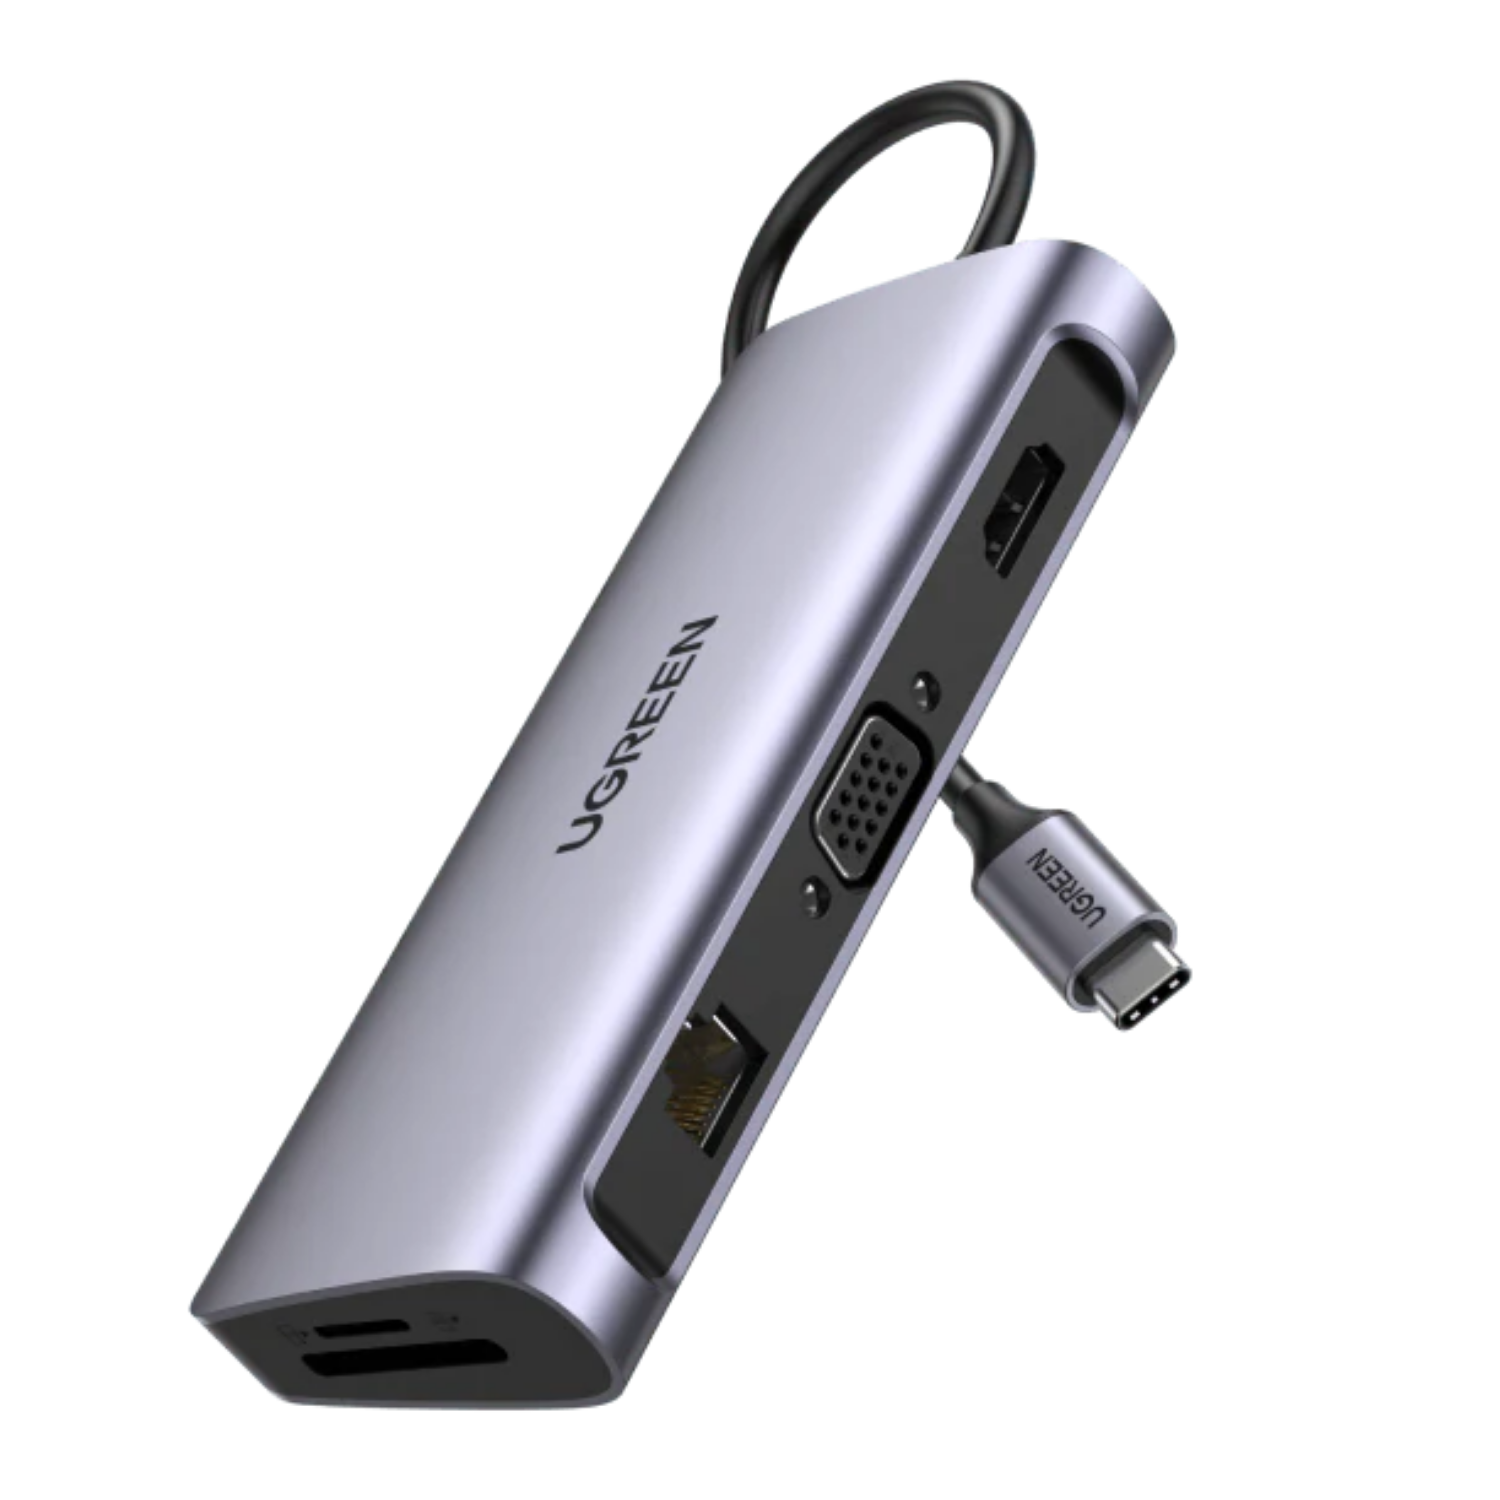 Adaptador Ugreen USB-C 10 en 1 HDMI/VGA/RJ45/USB 3.0/USB-C/SD/TF/AUDIO 3.5mm (80133)